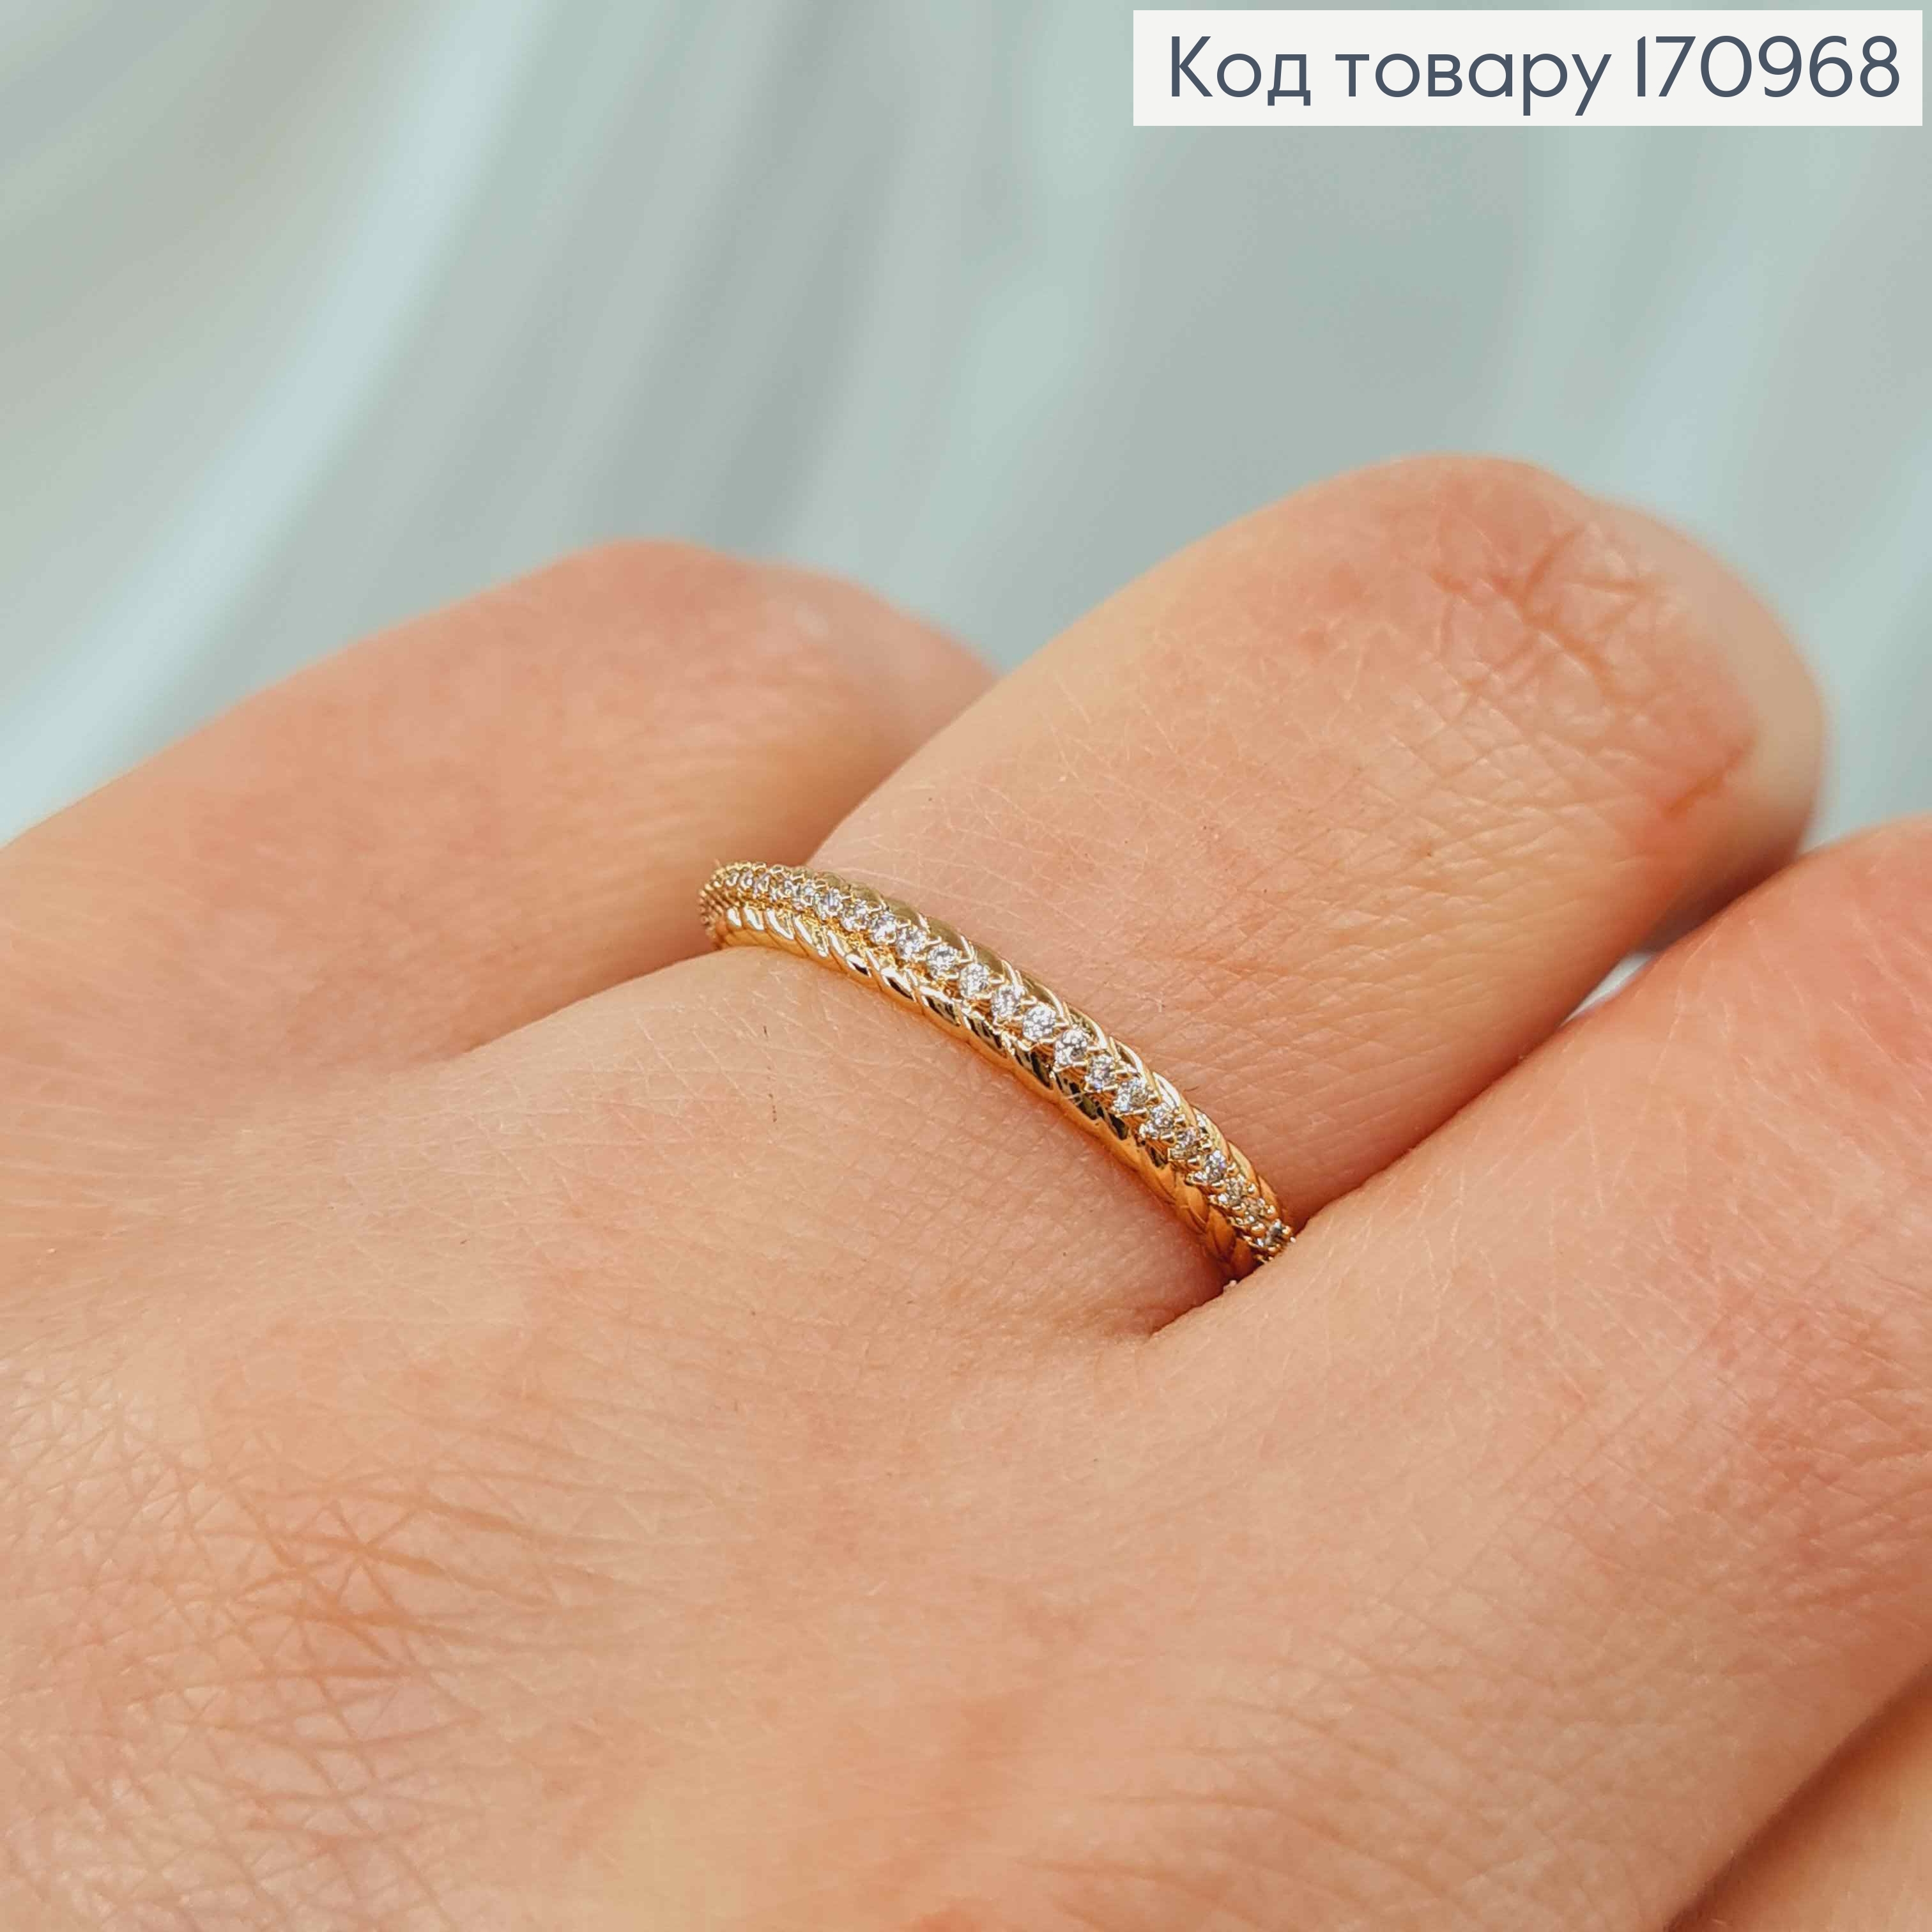 Кольцо, тоненькое плетеное с камнями, Xuping 18К 170968 фото 2